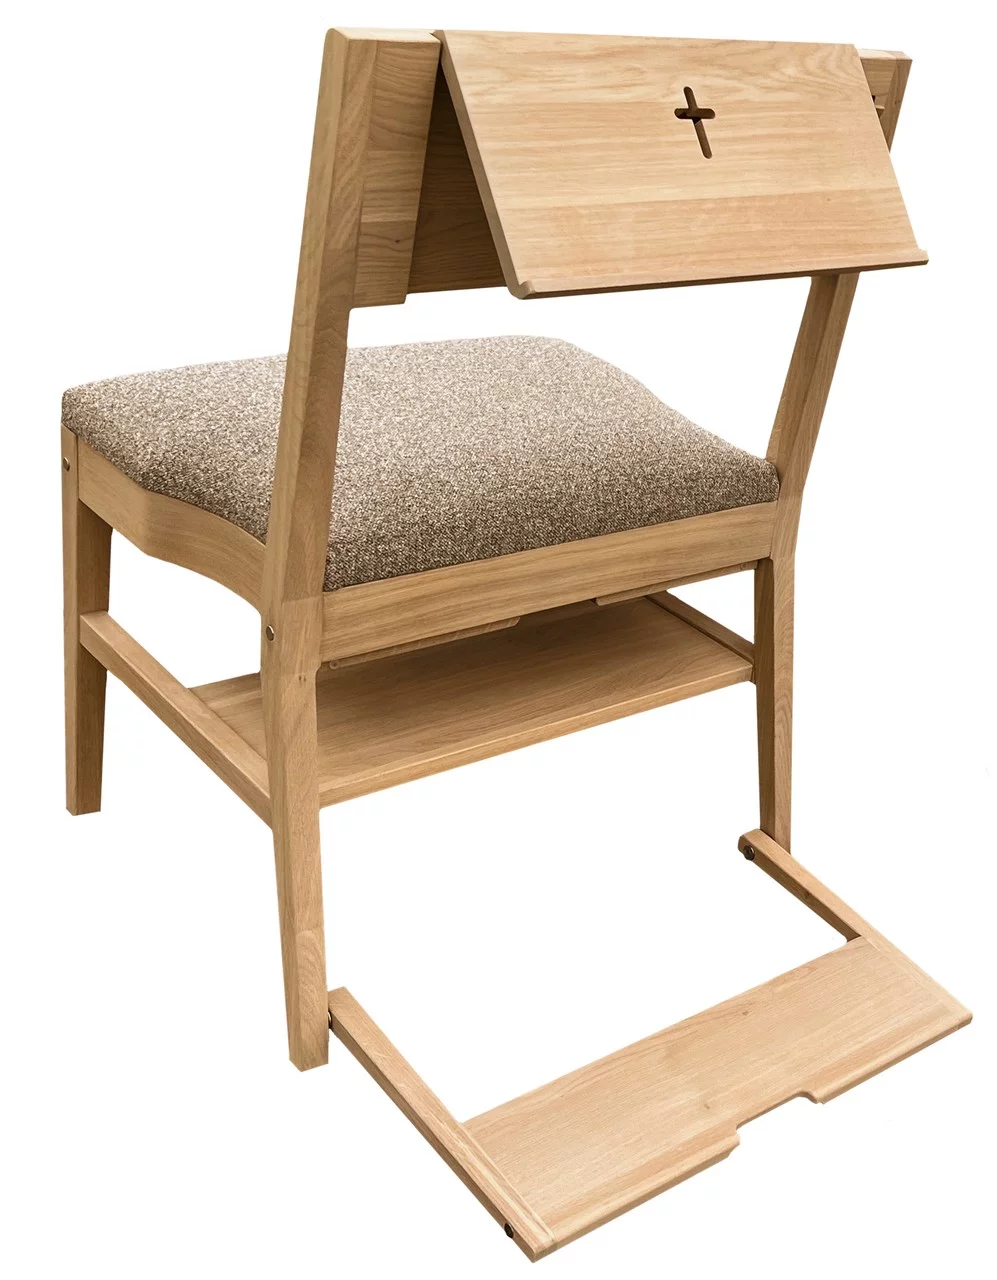 Dubová kostolná stolička ZOE s kompletnou ponukou doplnkov — pultík, háčik, kľakátko, systém spájateľnosti, polička pod sedením a čalúnenie sedáku